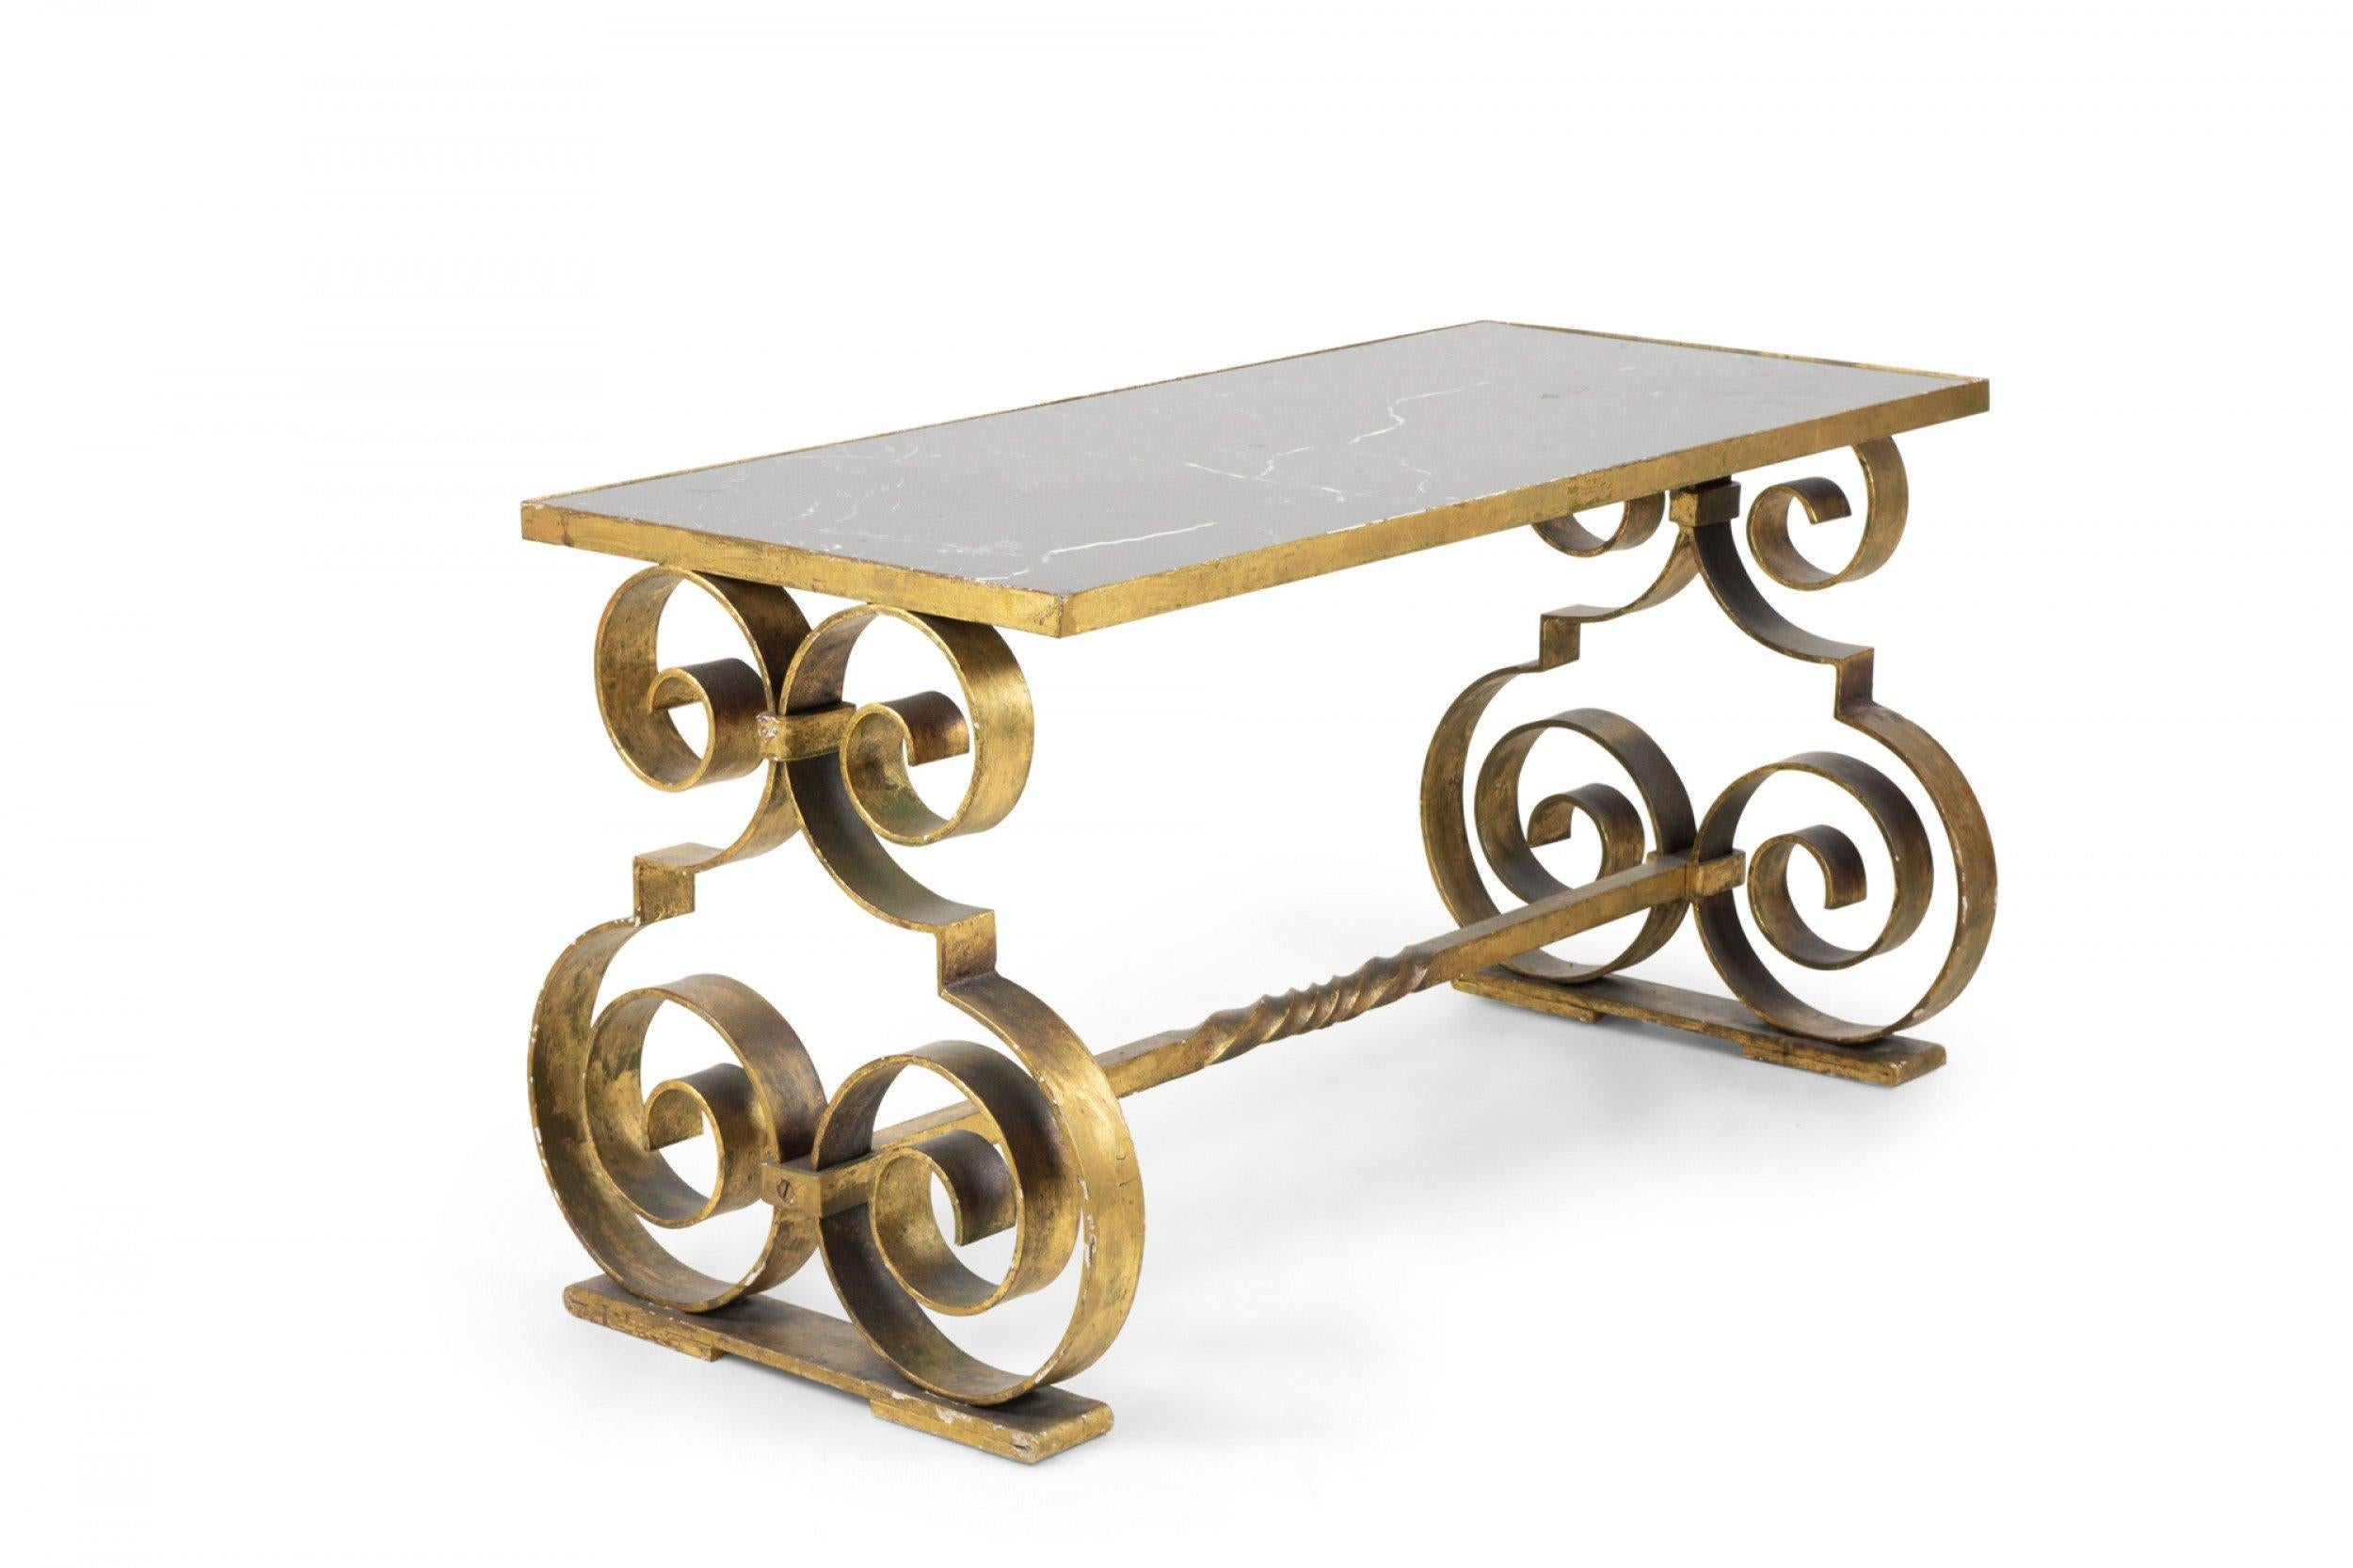 Table basse rectangulaire en fer doré, de style Art Déco, avec des côtés en forme de double volute et une base en forme de civière, supportant un plateau en marbre noir. (style GILBERT POILLERAT).
     